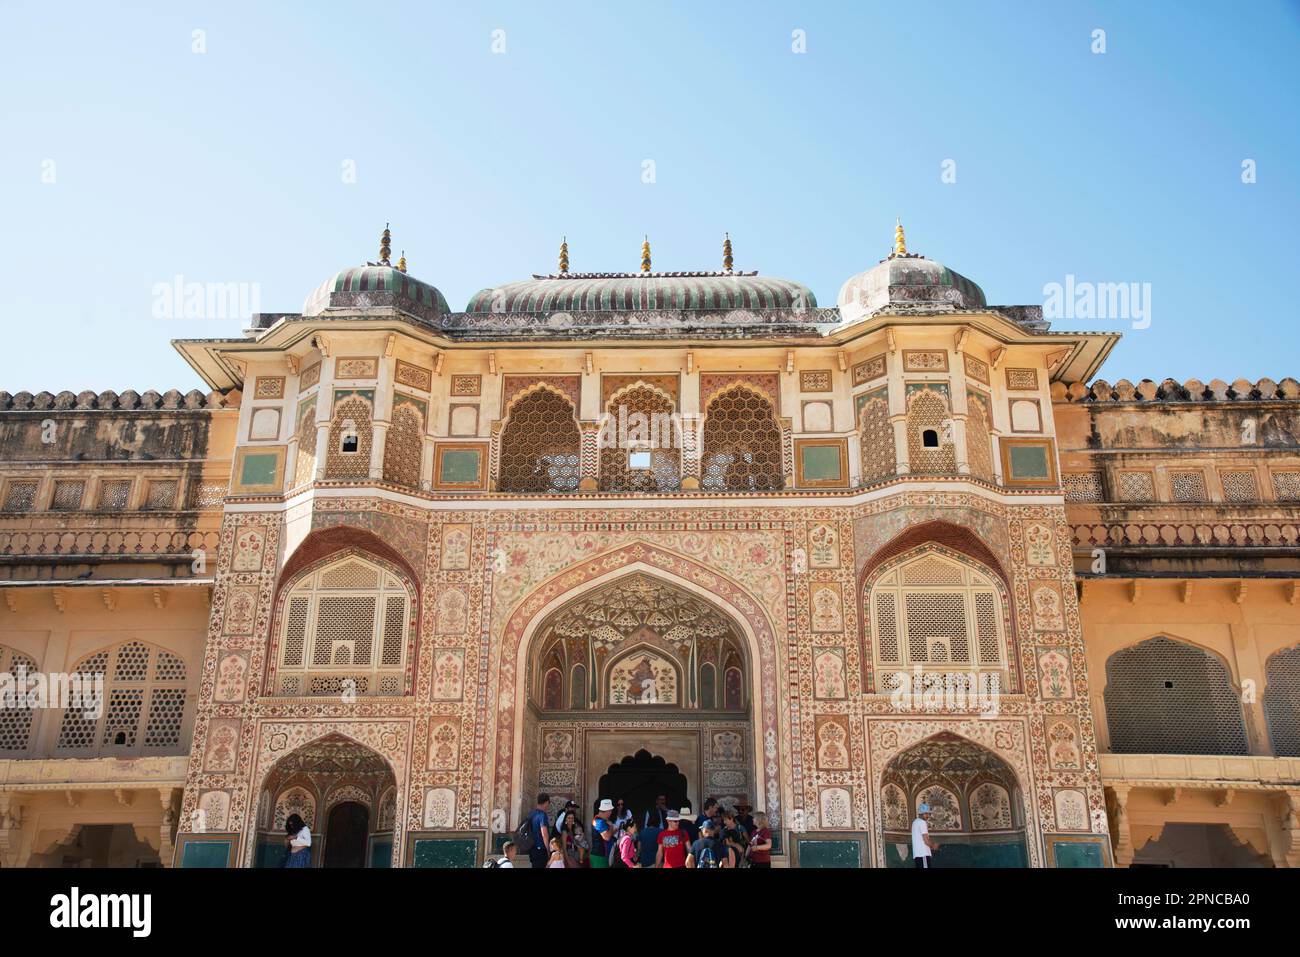 Farbenfrohe Fresken, Ganesh Pol (Ganesh Gate), Amer Palace in Jaipur, Rajasthan, Indien Stockfoto